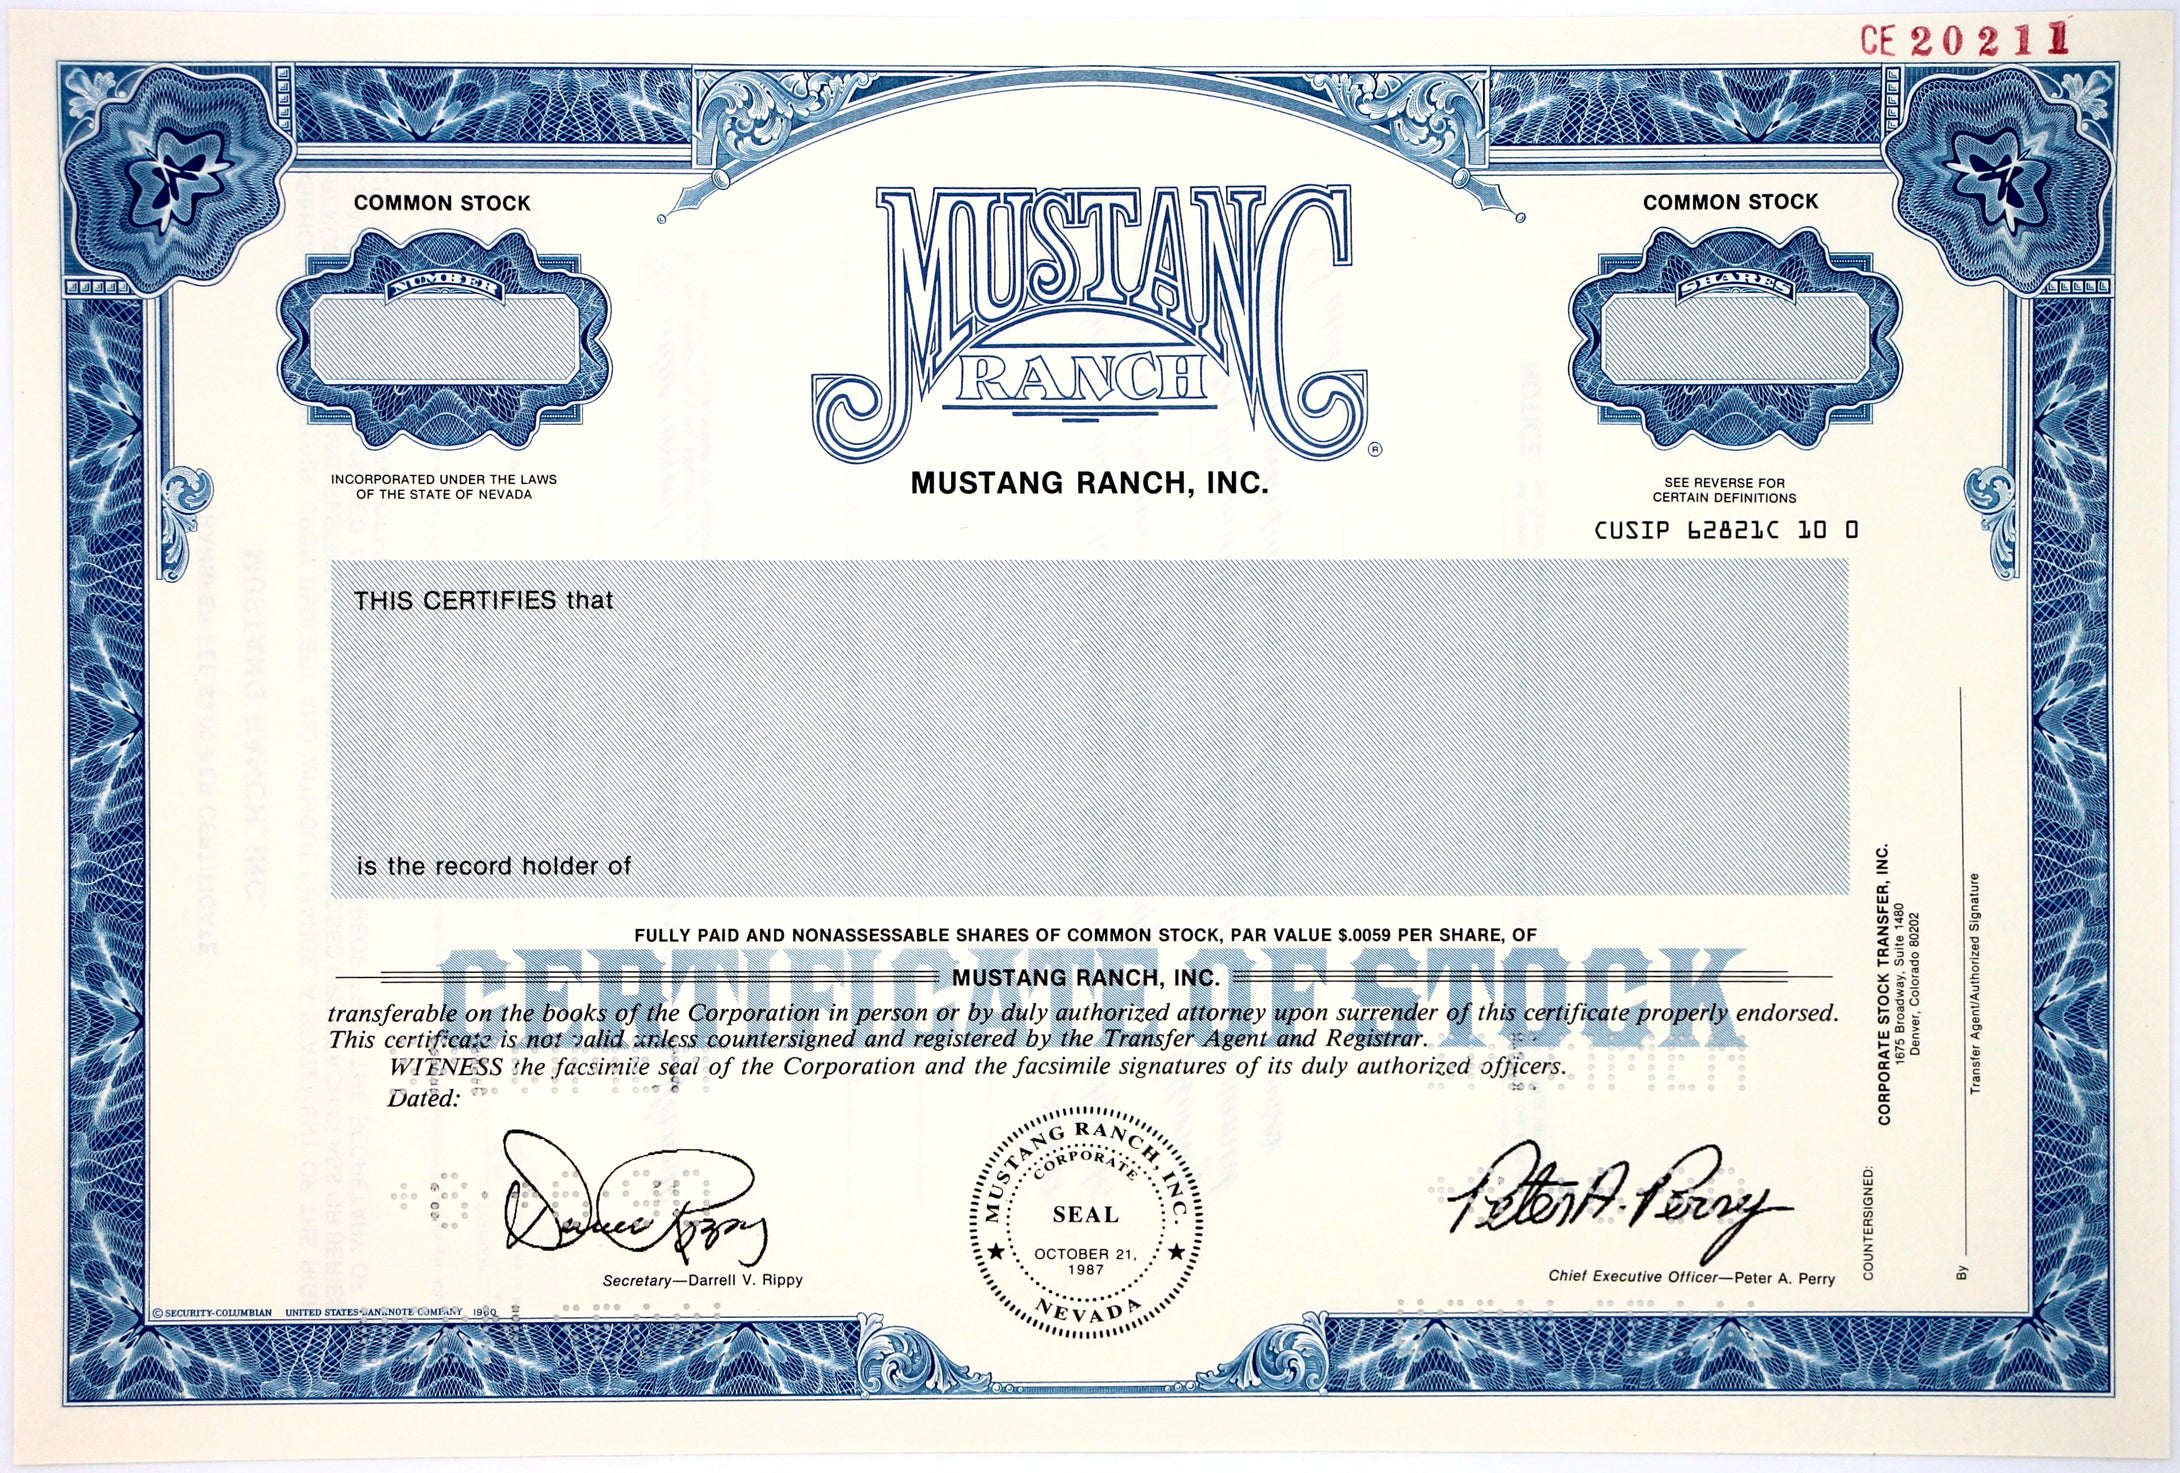 Mustang Ranch, Inc. Specimen Stock Certificate - 1990 - Wall Street Treasures